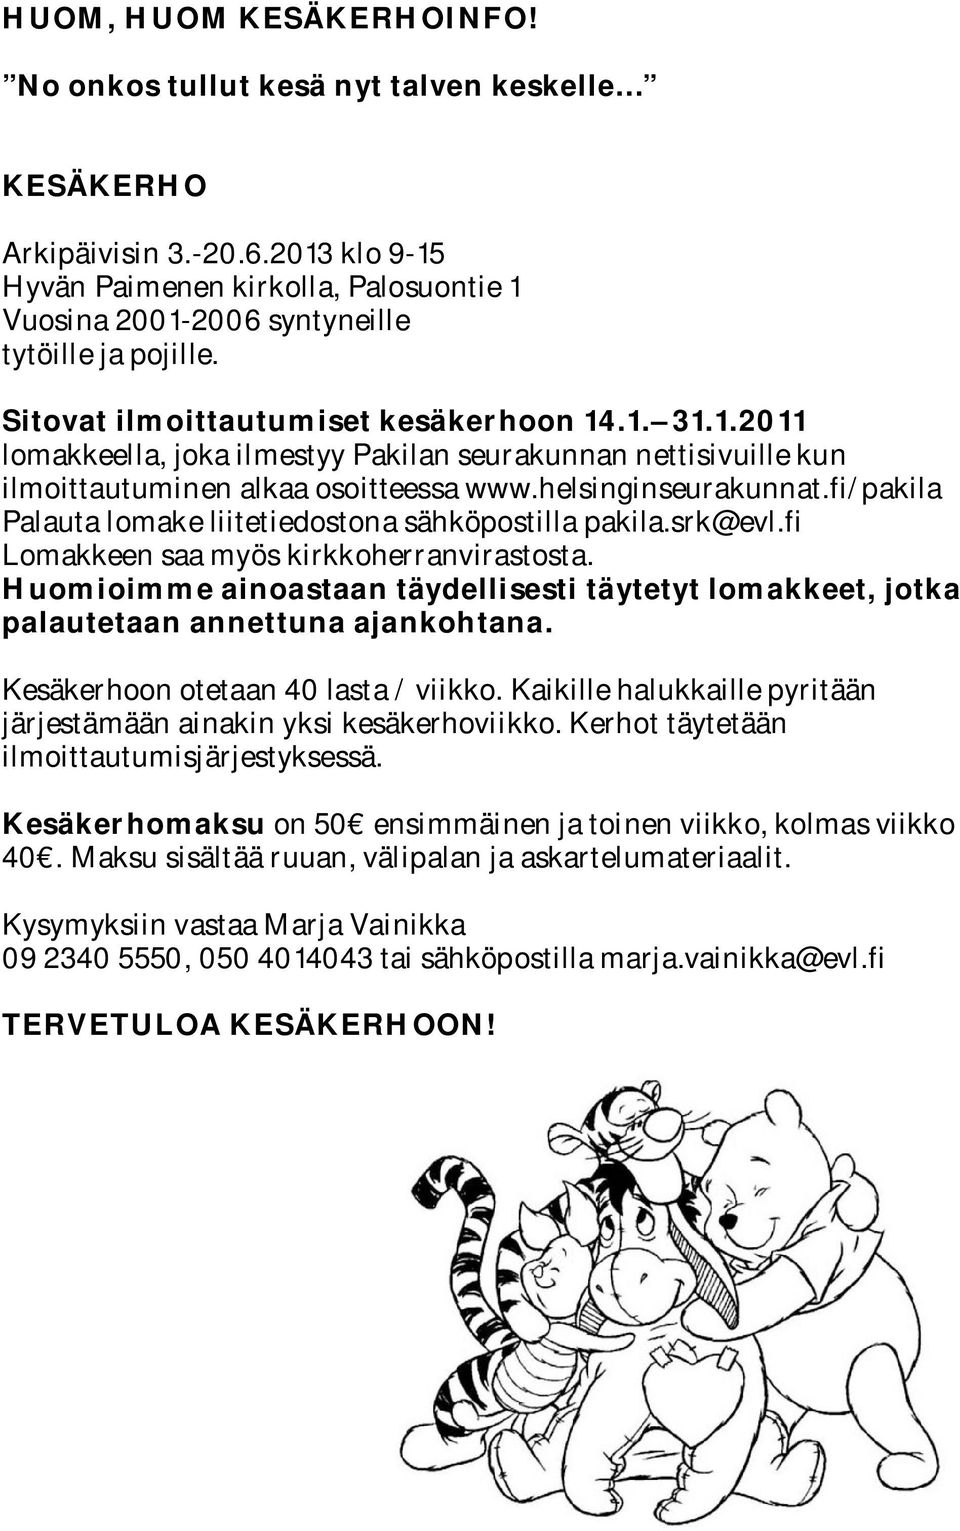 helsinginseurakunnat.fi/pakila Palauta lomake liitetiedostona sähköpostilla pakila.srk@evl.fi Lomakkeen saa myös kirkkoherranvirastosta.